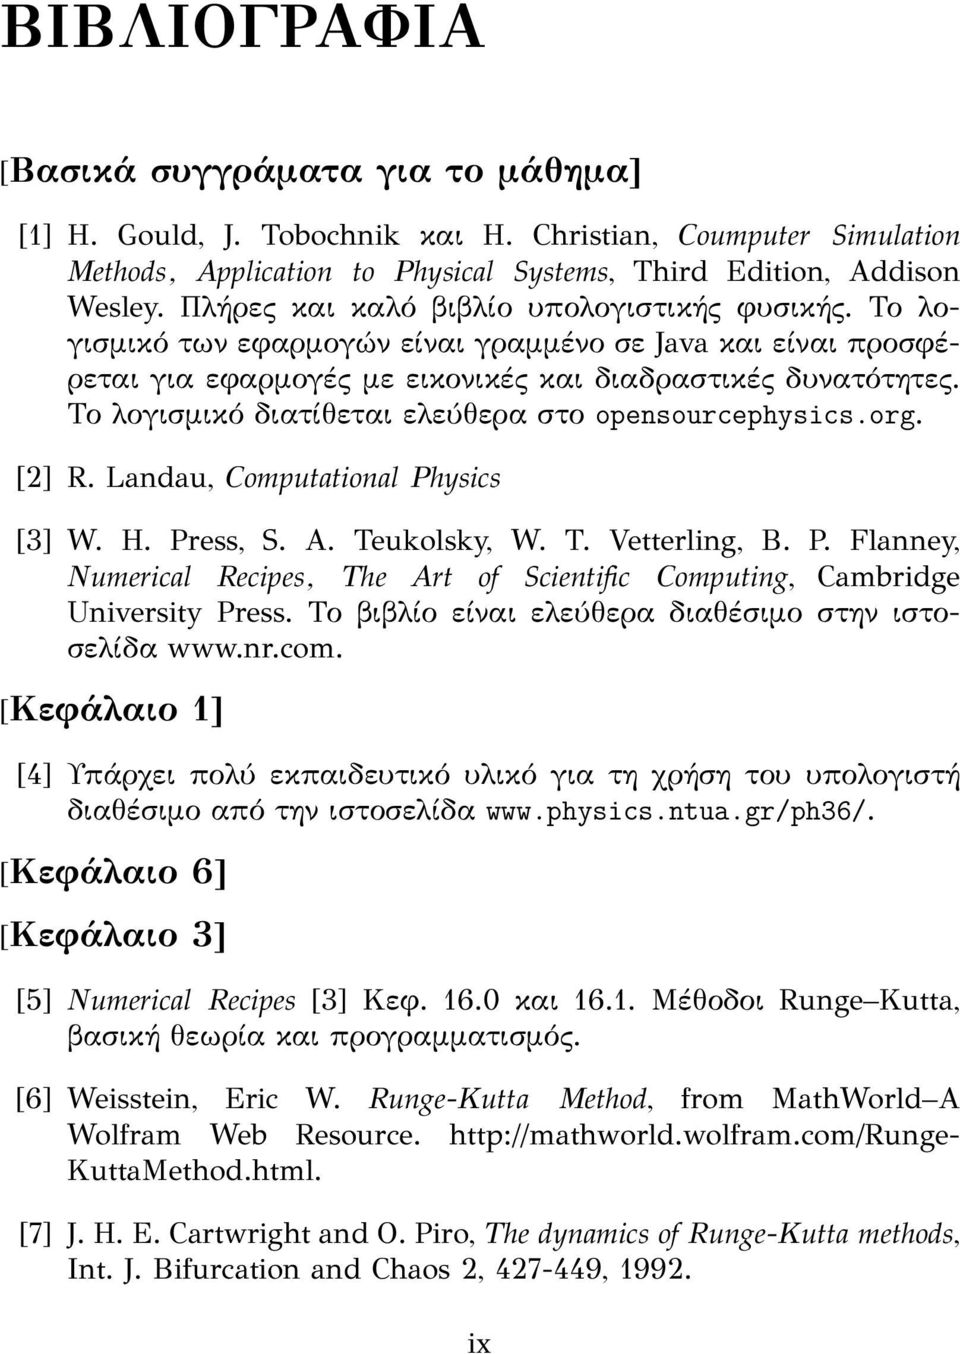 Το λογισμικό διατίθεται ελεύθερα στο opensourcephysics.org. [2] R. Landau, omputational Physics [3] W. H. Press, S. A. Teukolsky, W. T. Vetterling, B. P. Flanney, Numerical Recipes, The Art of Scientific omputing, ambridge University Press.